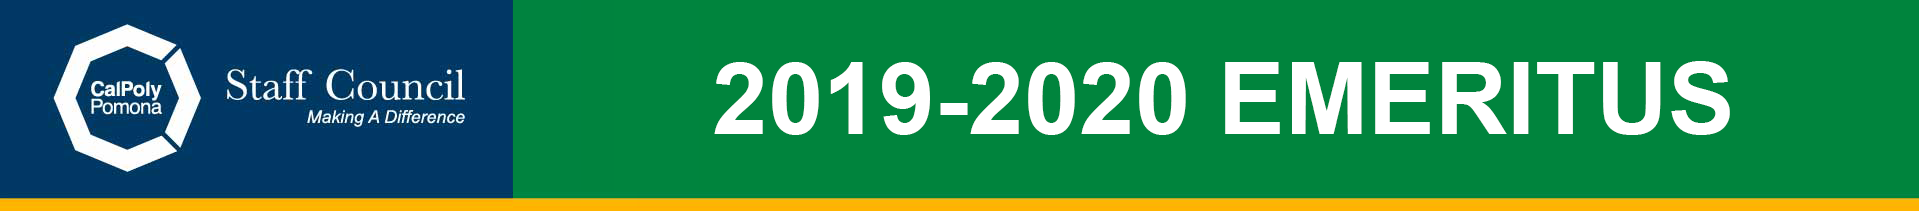 2019-2020 Emeritus